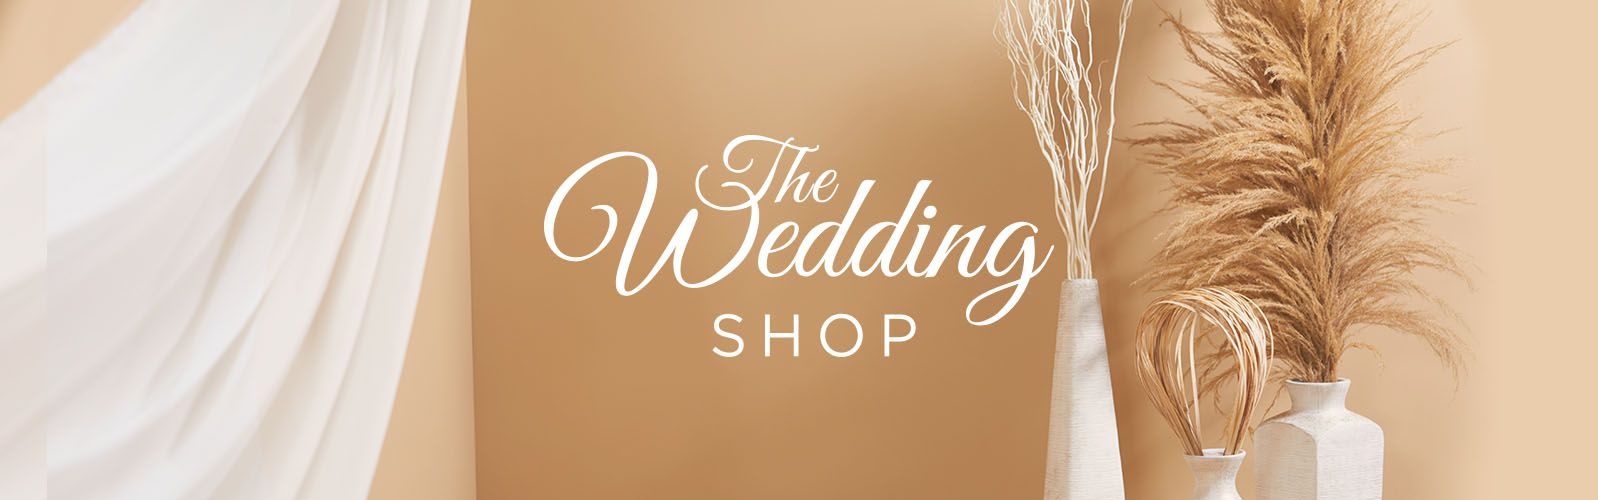 the wedding shop qvc